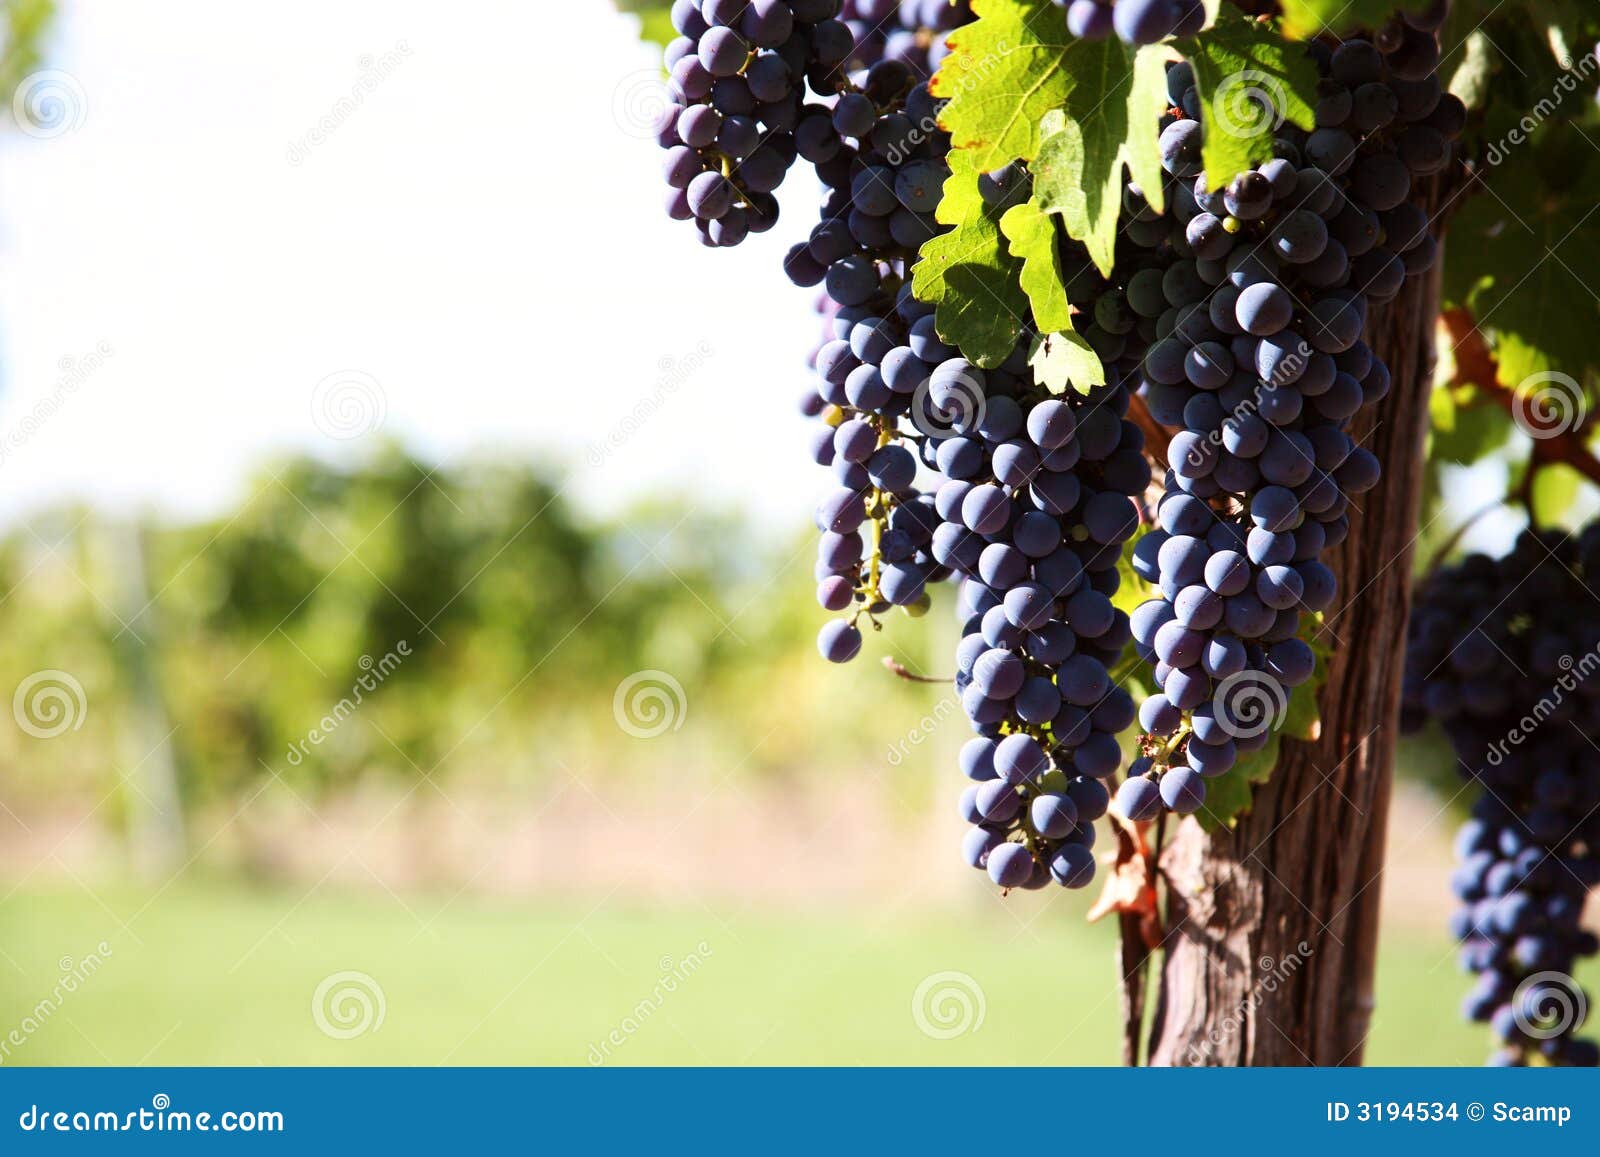 merlot grapes in vineyard